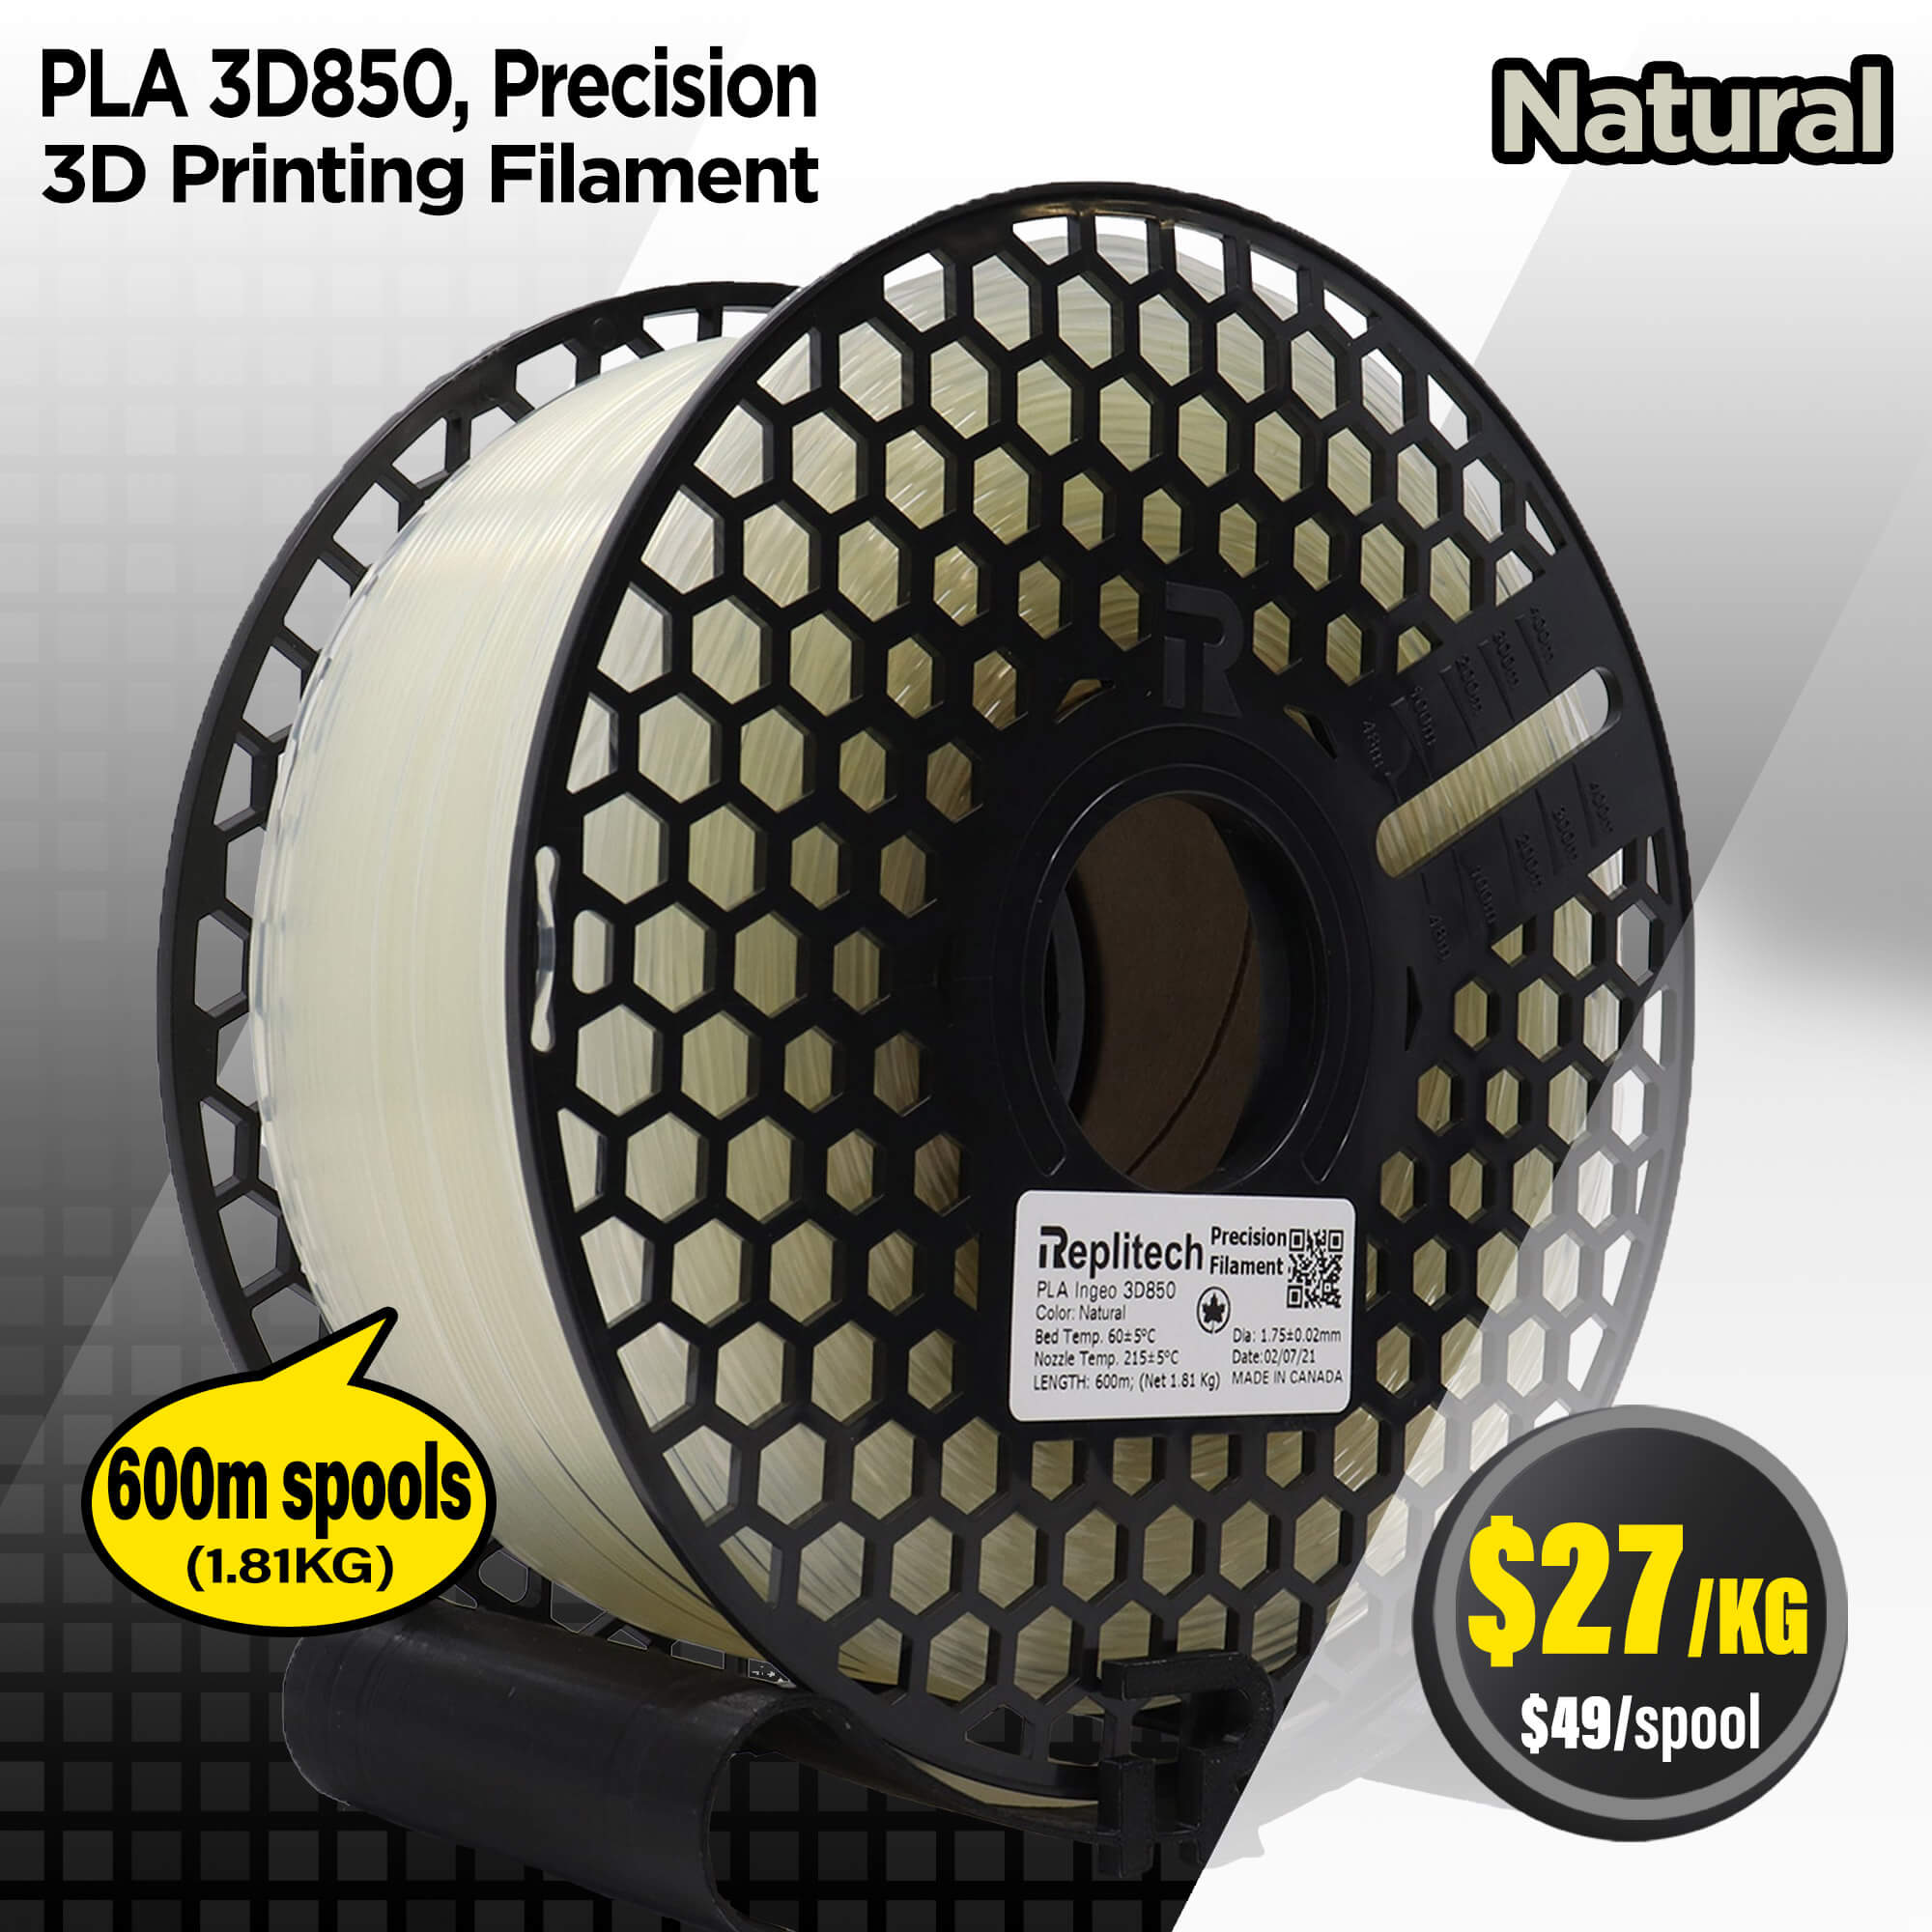 PLA 3D850 Precision Natural